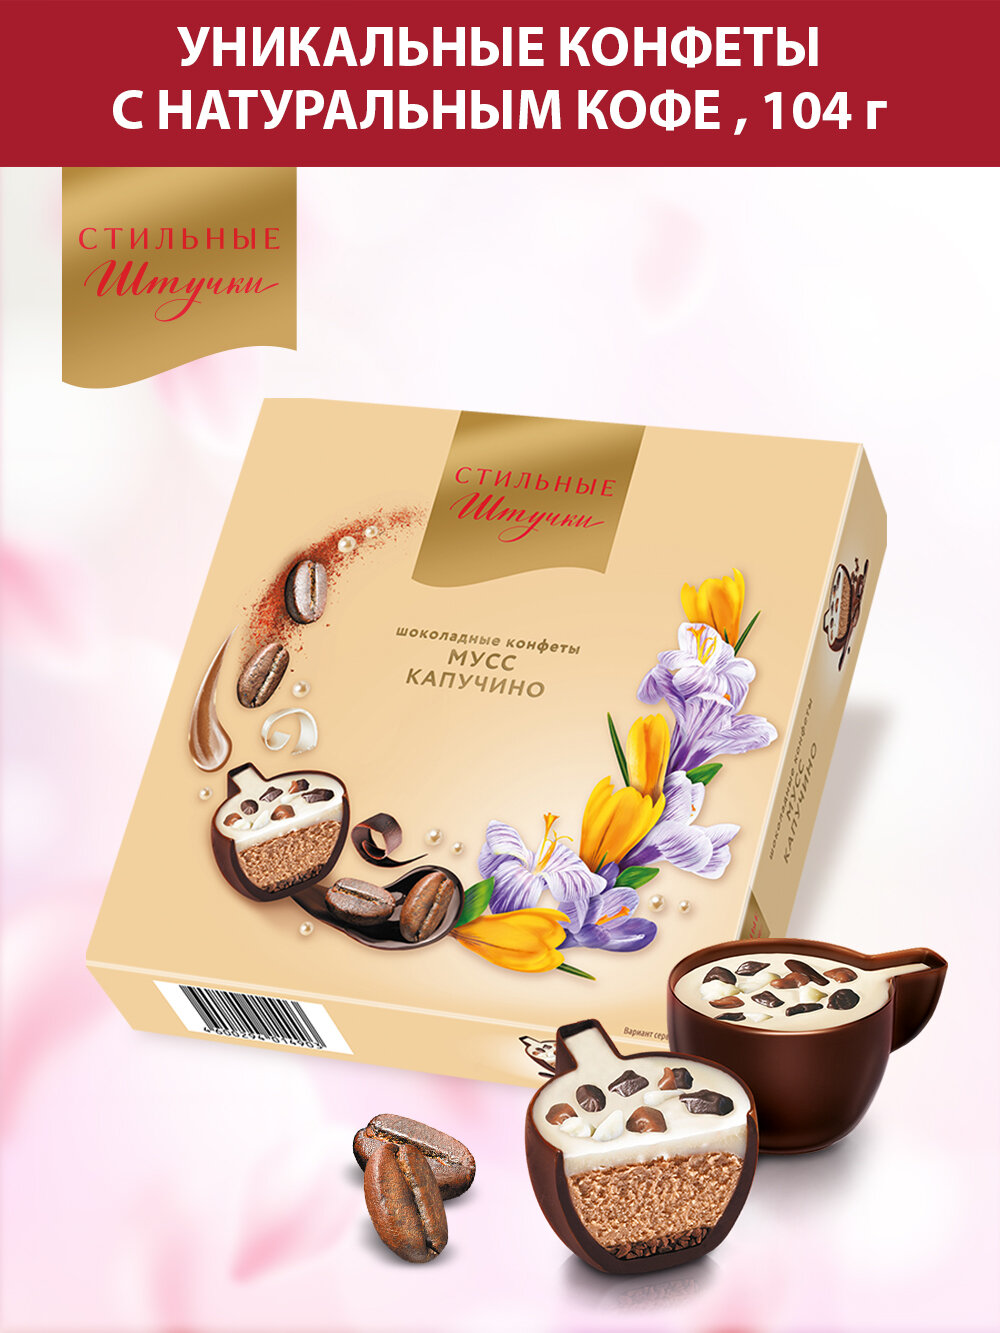 Конфеты шоколадные Стильные штучки мусс капучино подарочные в весенней коробке с символикой 8 марта, 104 г